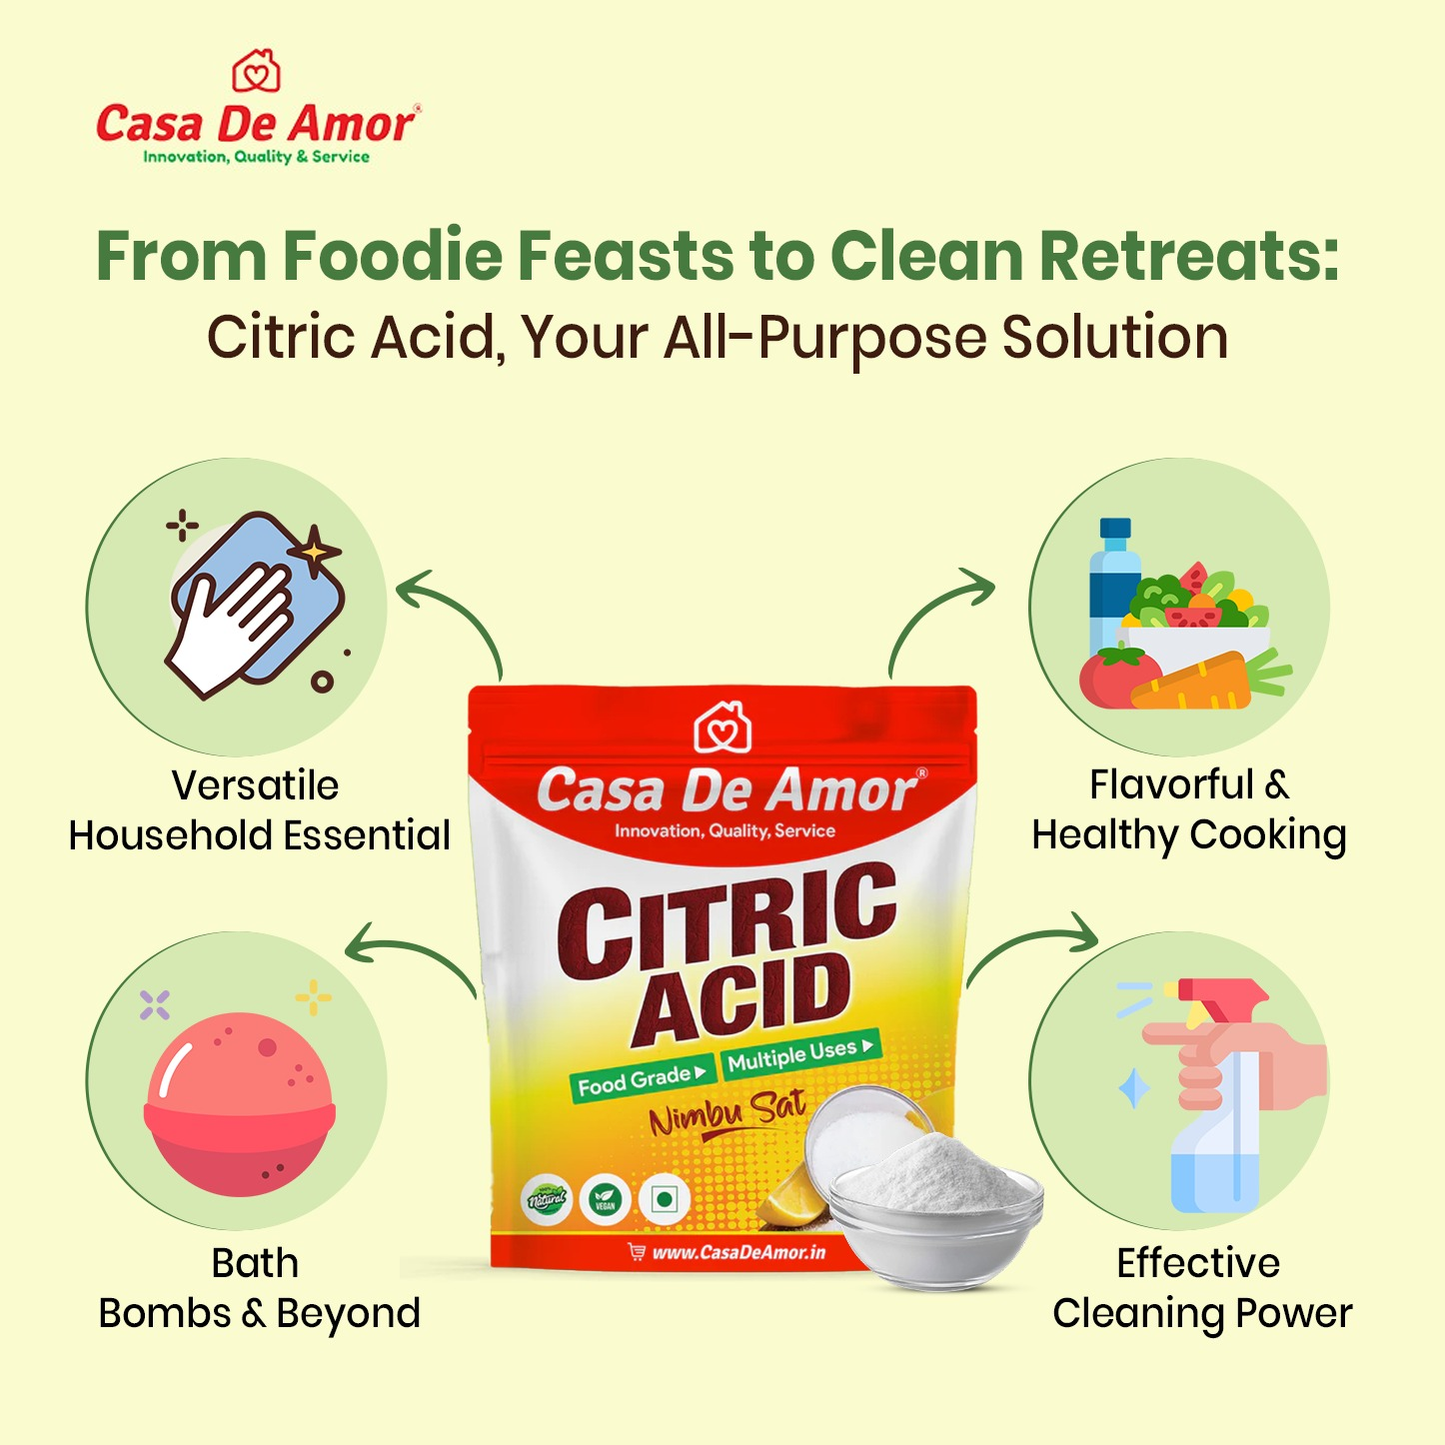 Casa De Amor Pure Citric Acid, Nimbu Sat | Food Grade, Natural Preservative, Cleaning agent